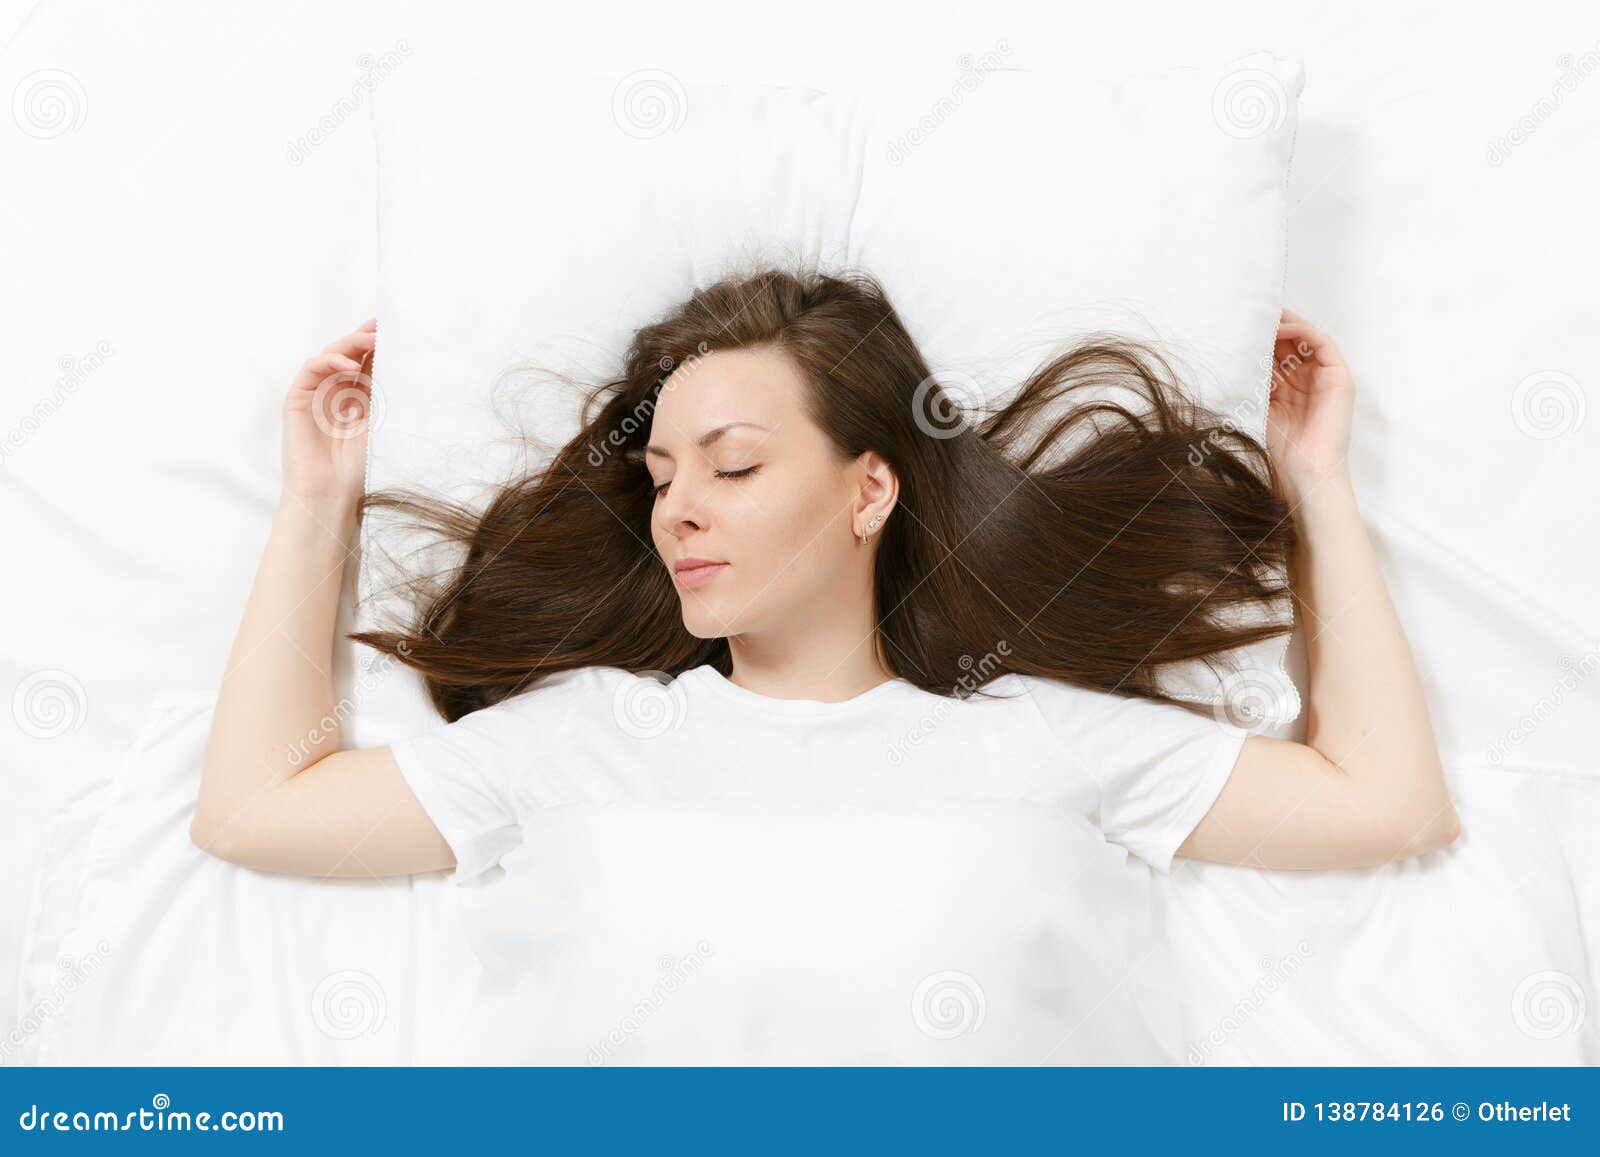 Спать с распущенными волосами или собранными. Девушка лежит на подушке вид сверху. Волосы на подушке. Девушка лежит волосы на подушке. Девушка лежит вид сверху.